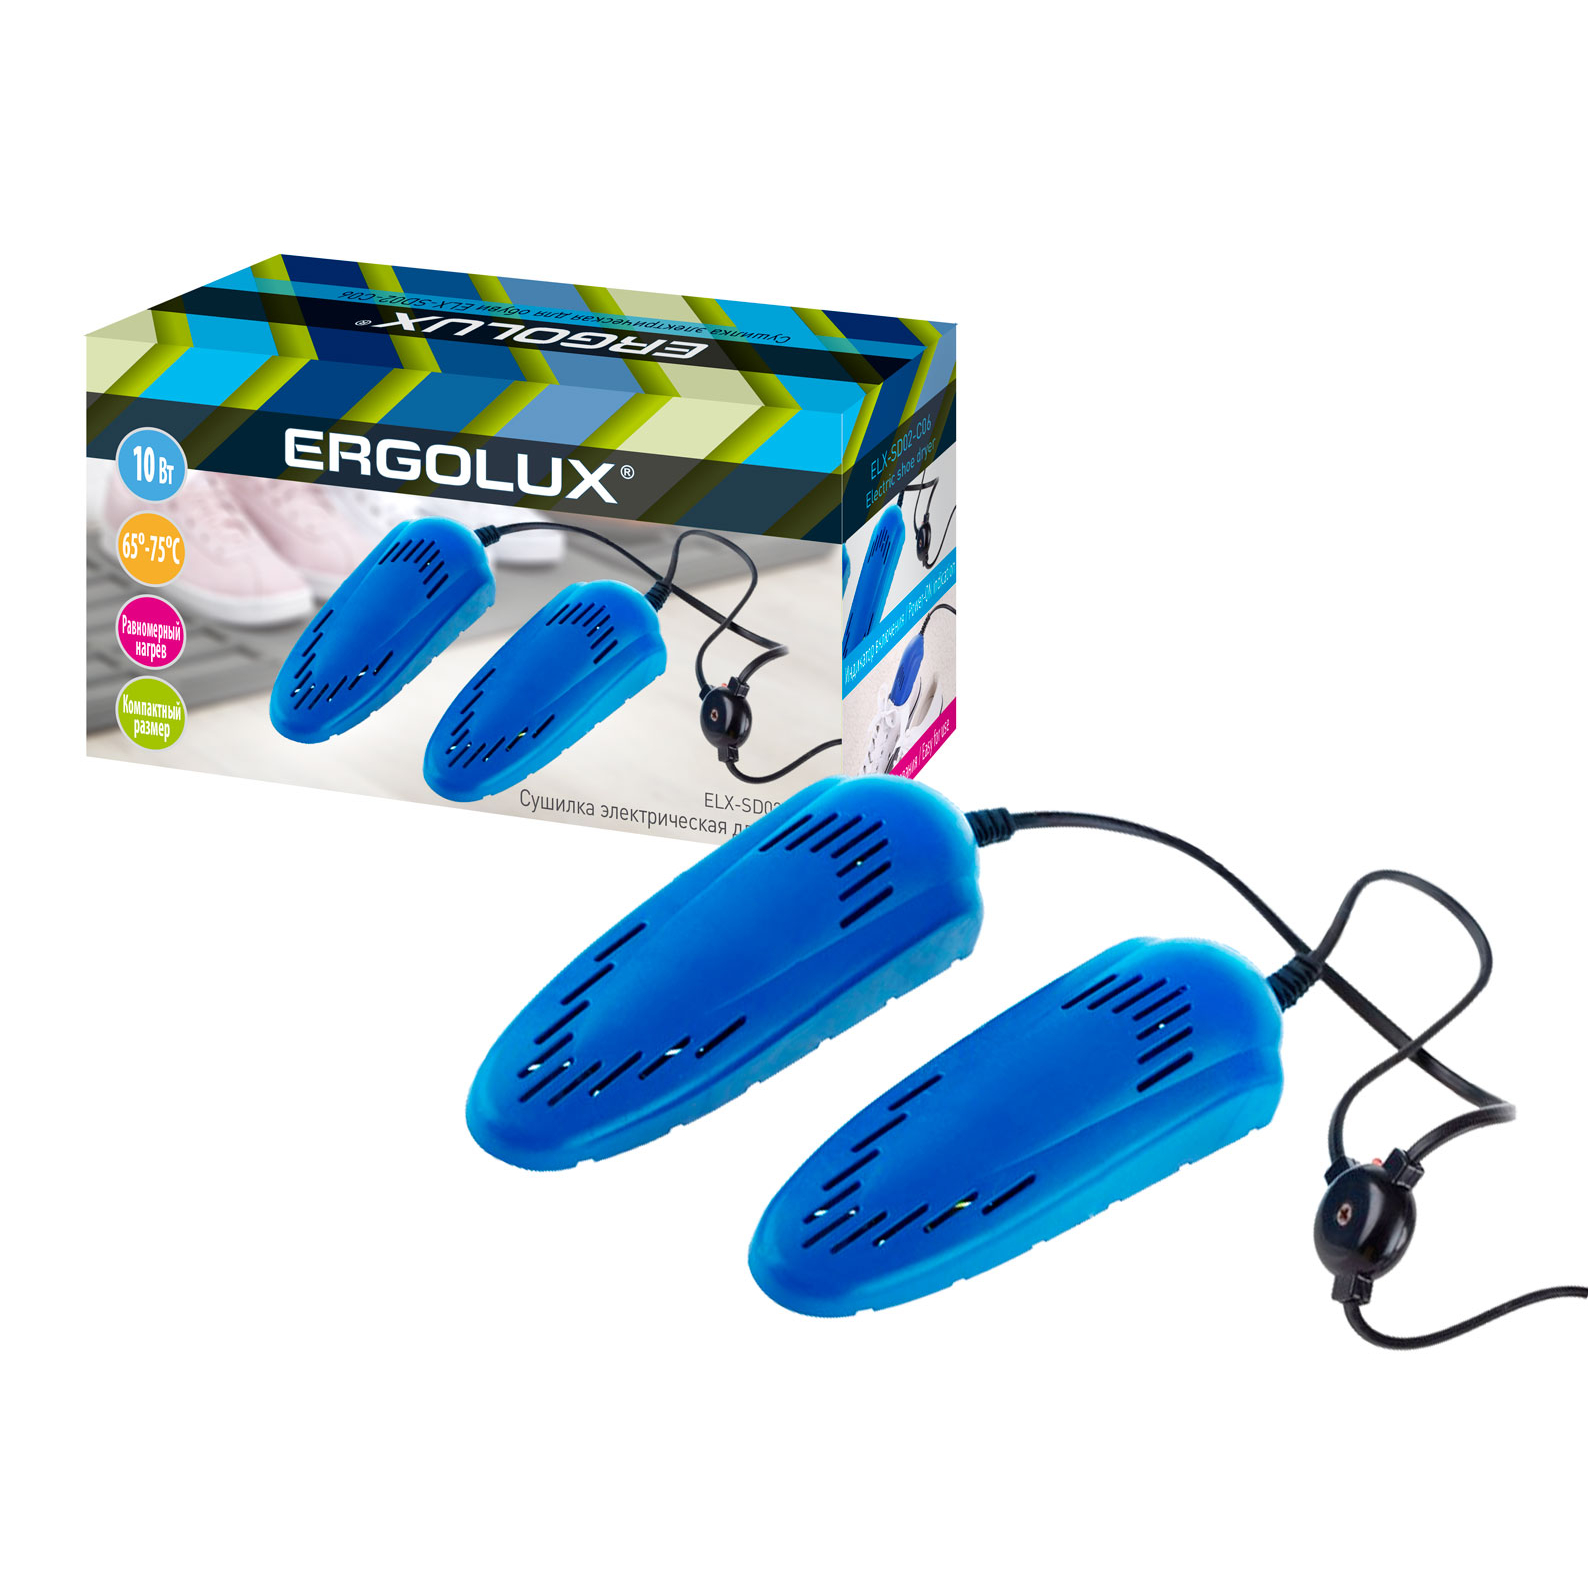 ERGOLUX ELX-SD02-C06 синяя (электрическая сушилка для обуви 10 Вт, 220-240 В)